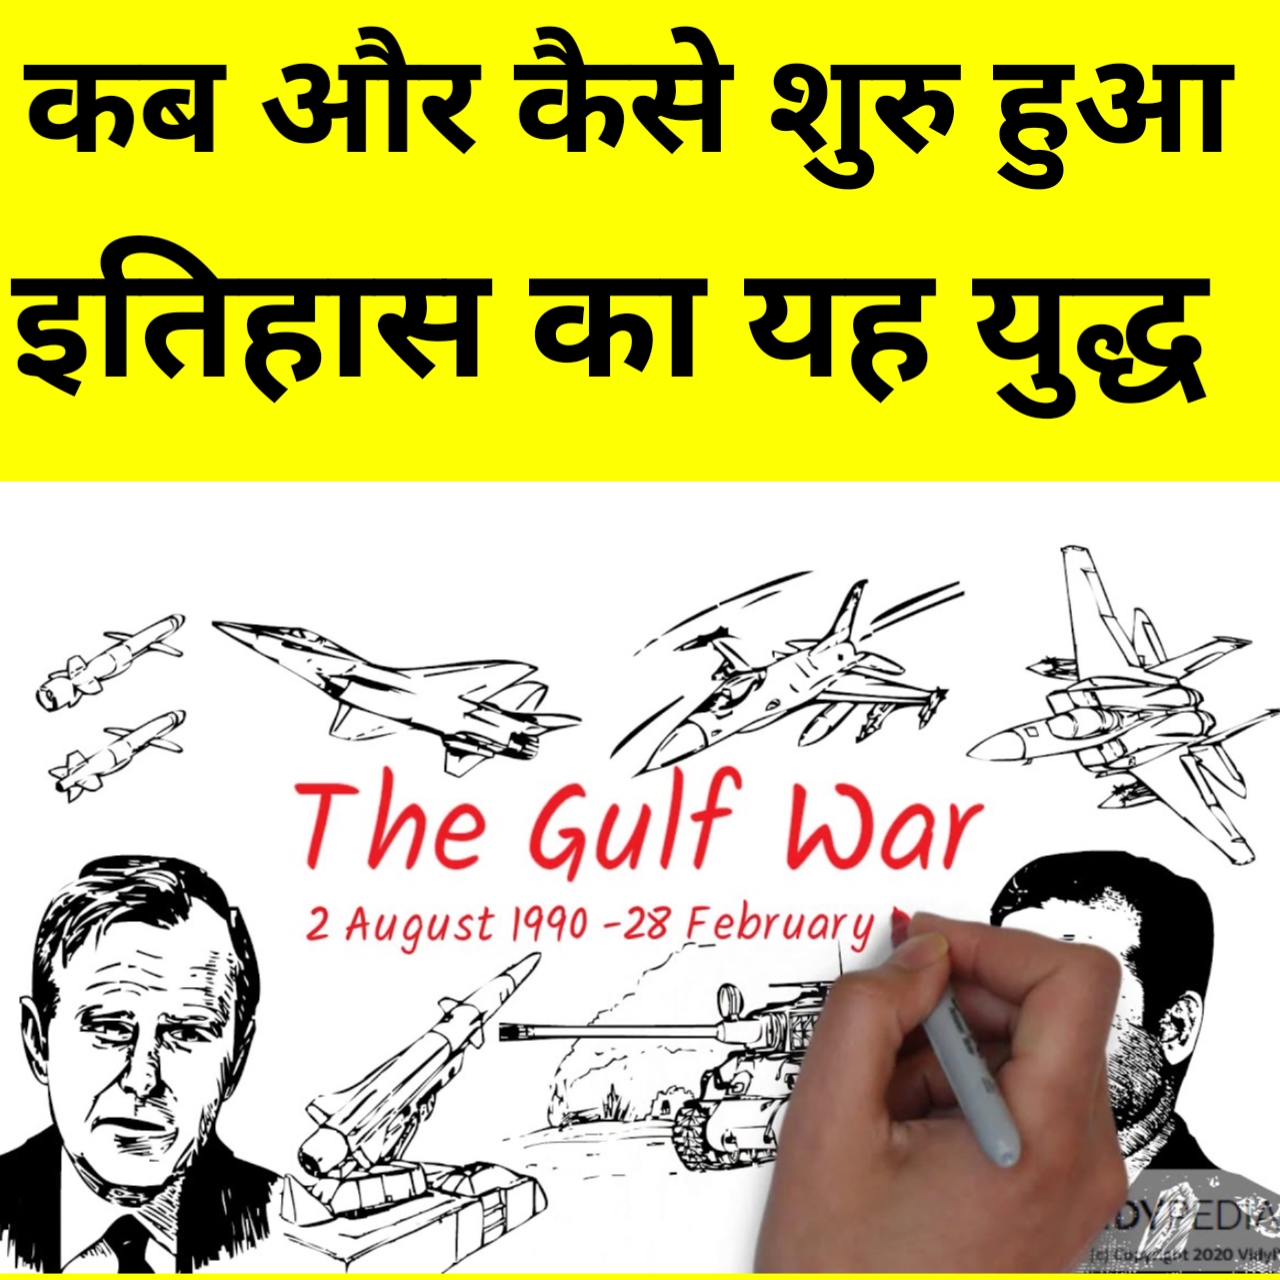 Gulf-war-history